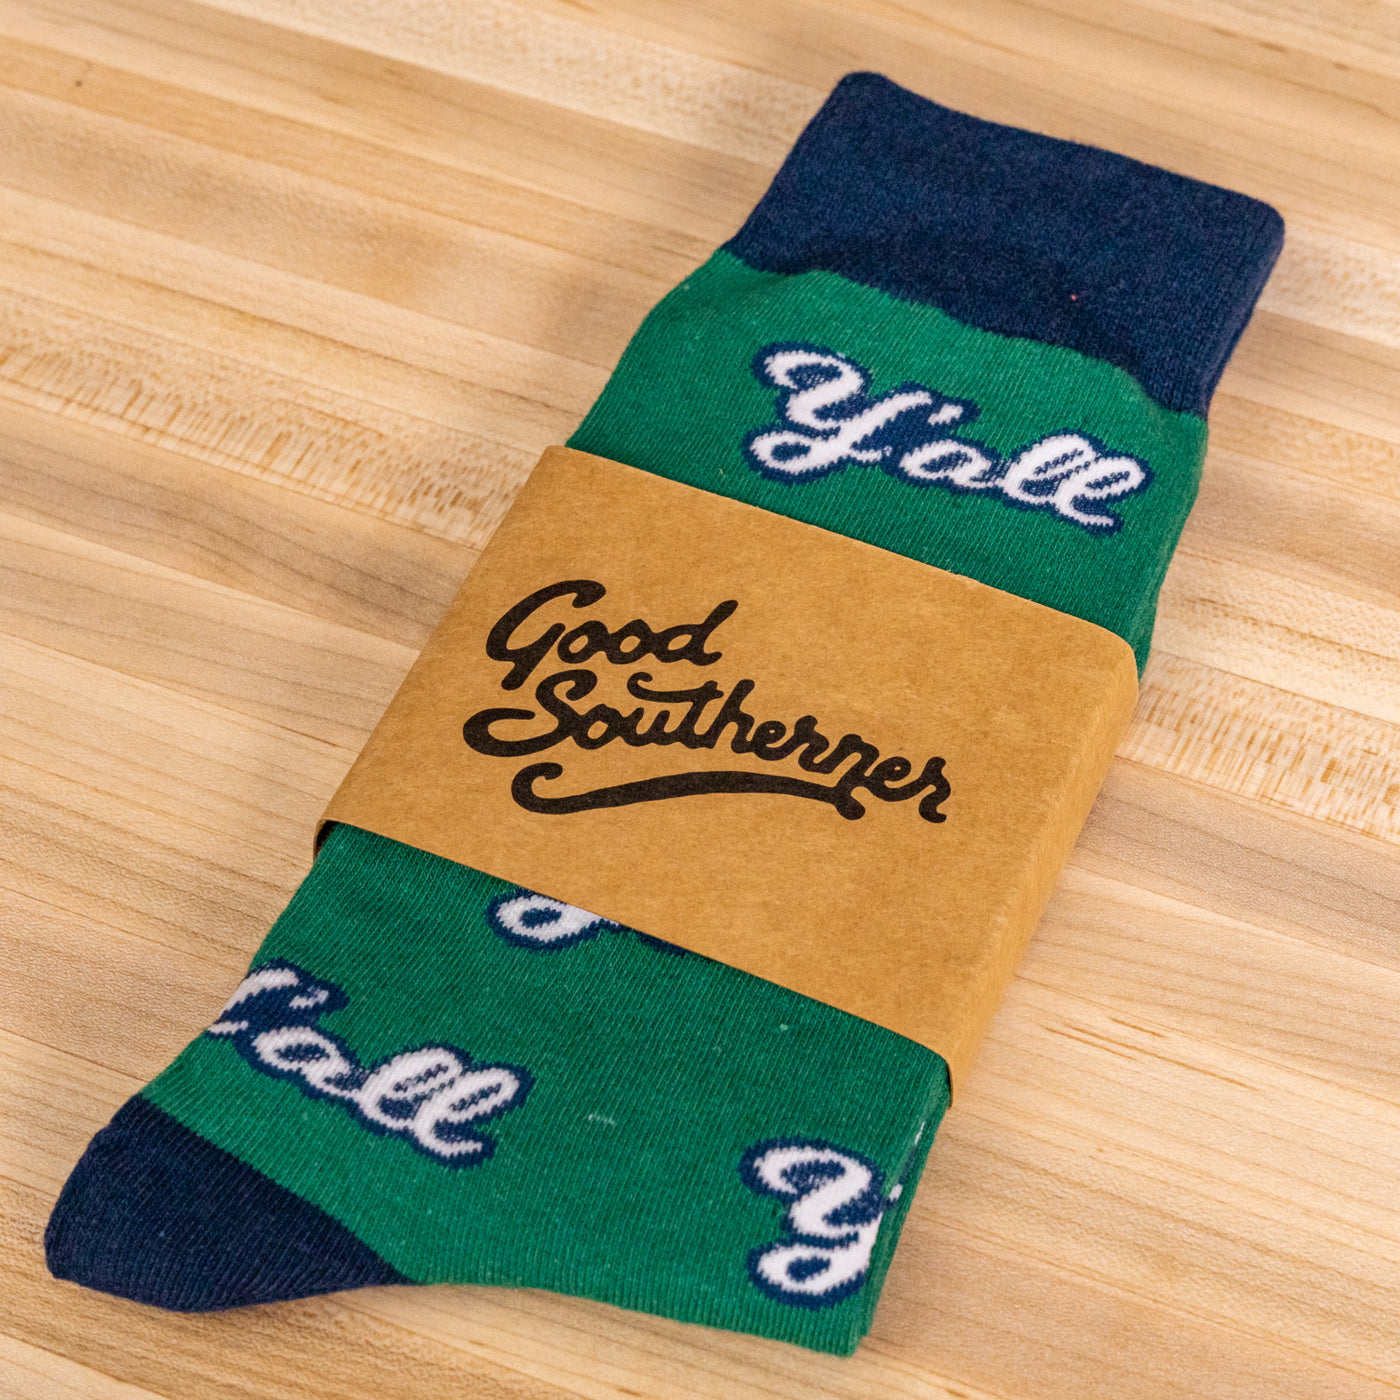 Good Southerner Socks